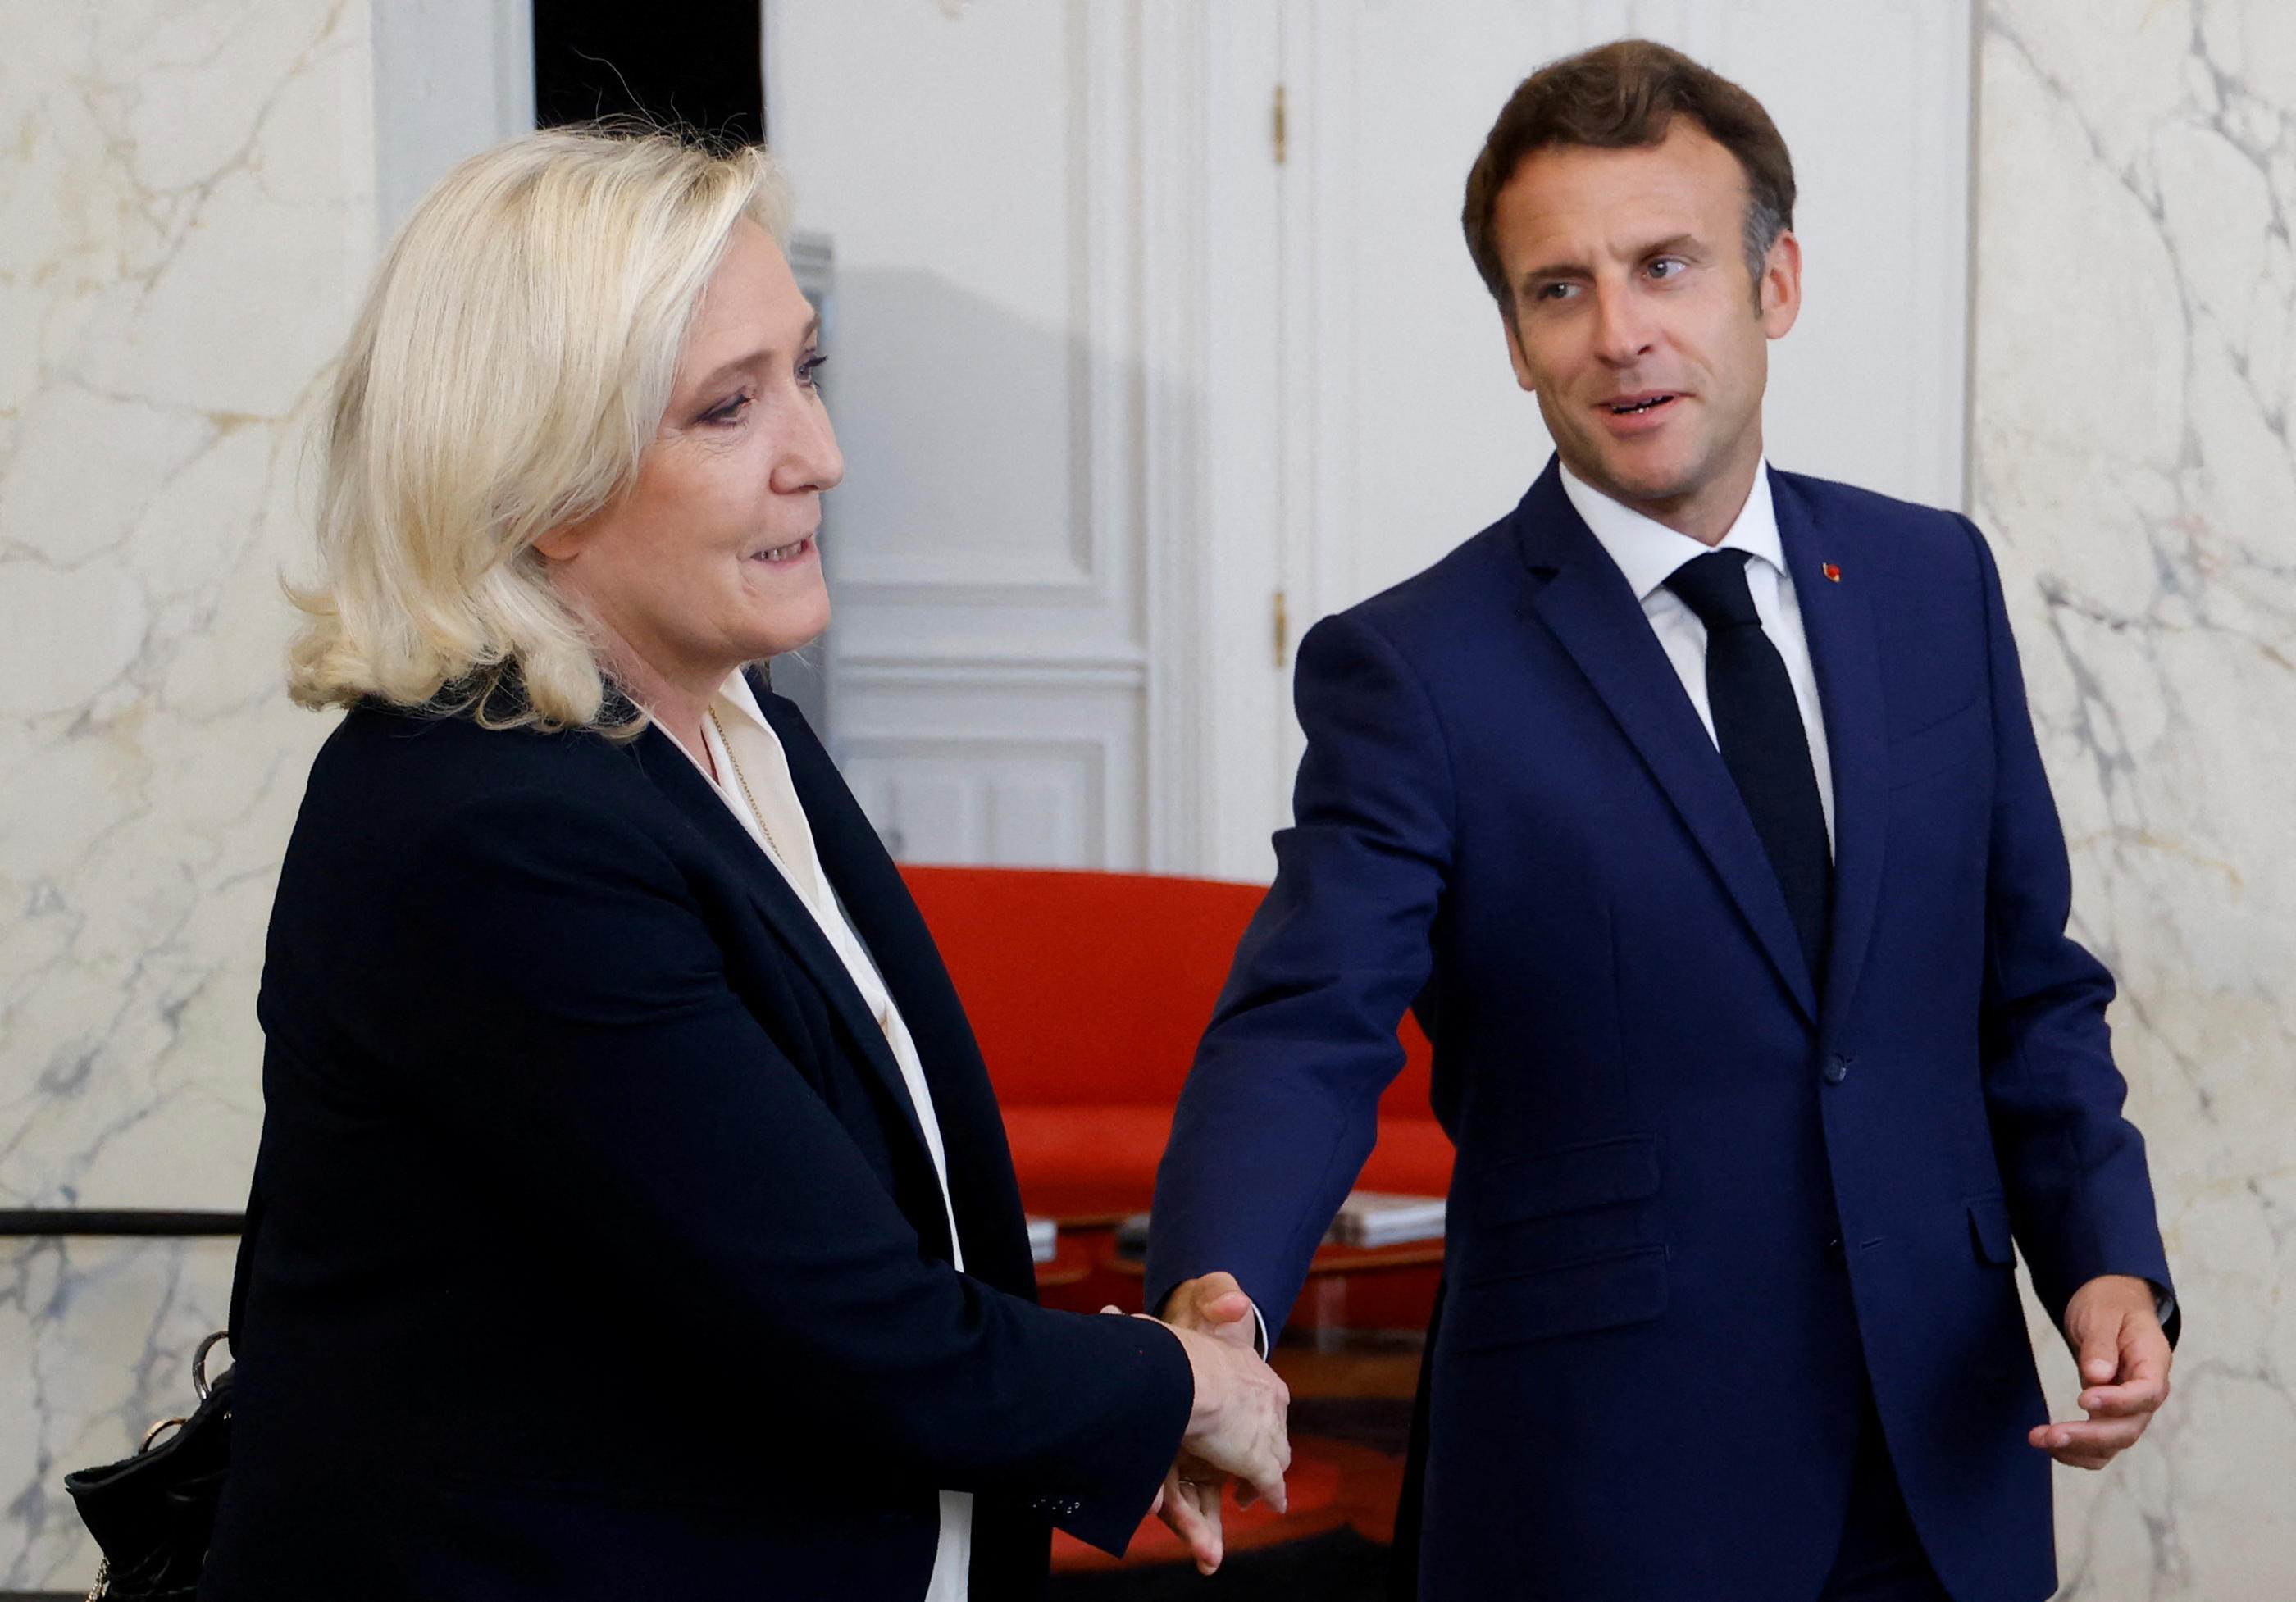 Après son revers aux législatives, Emmanuel Macron a reçu les chefs de l'opposition, dont Marine Le Pen mardi 21 juin, pour tenter de nouer des alliances. Reuters/Ludovic Marin